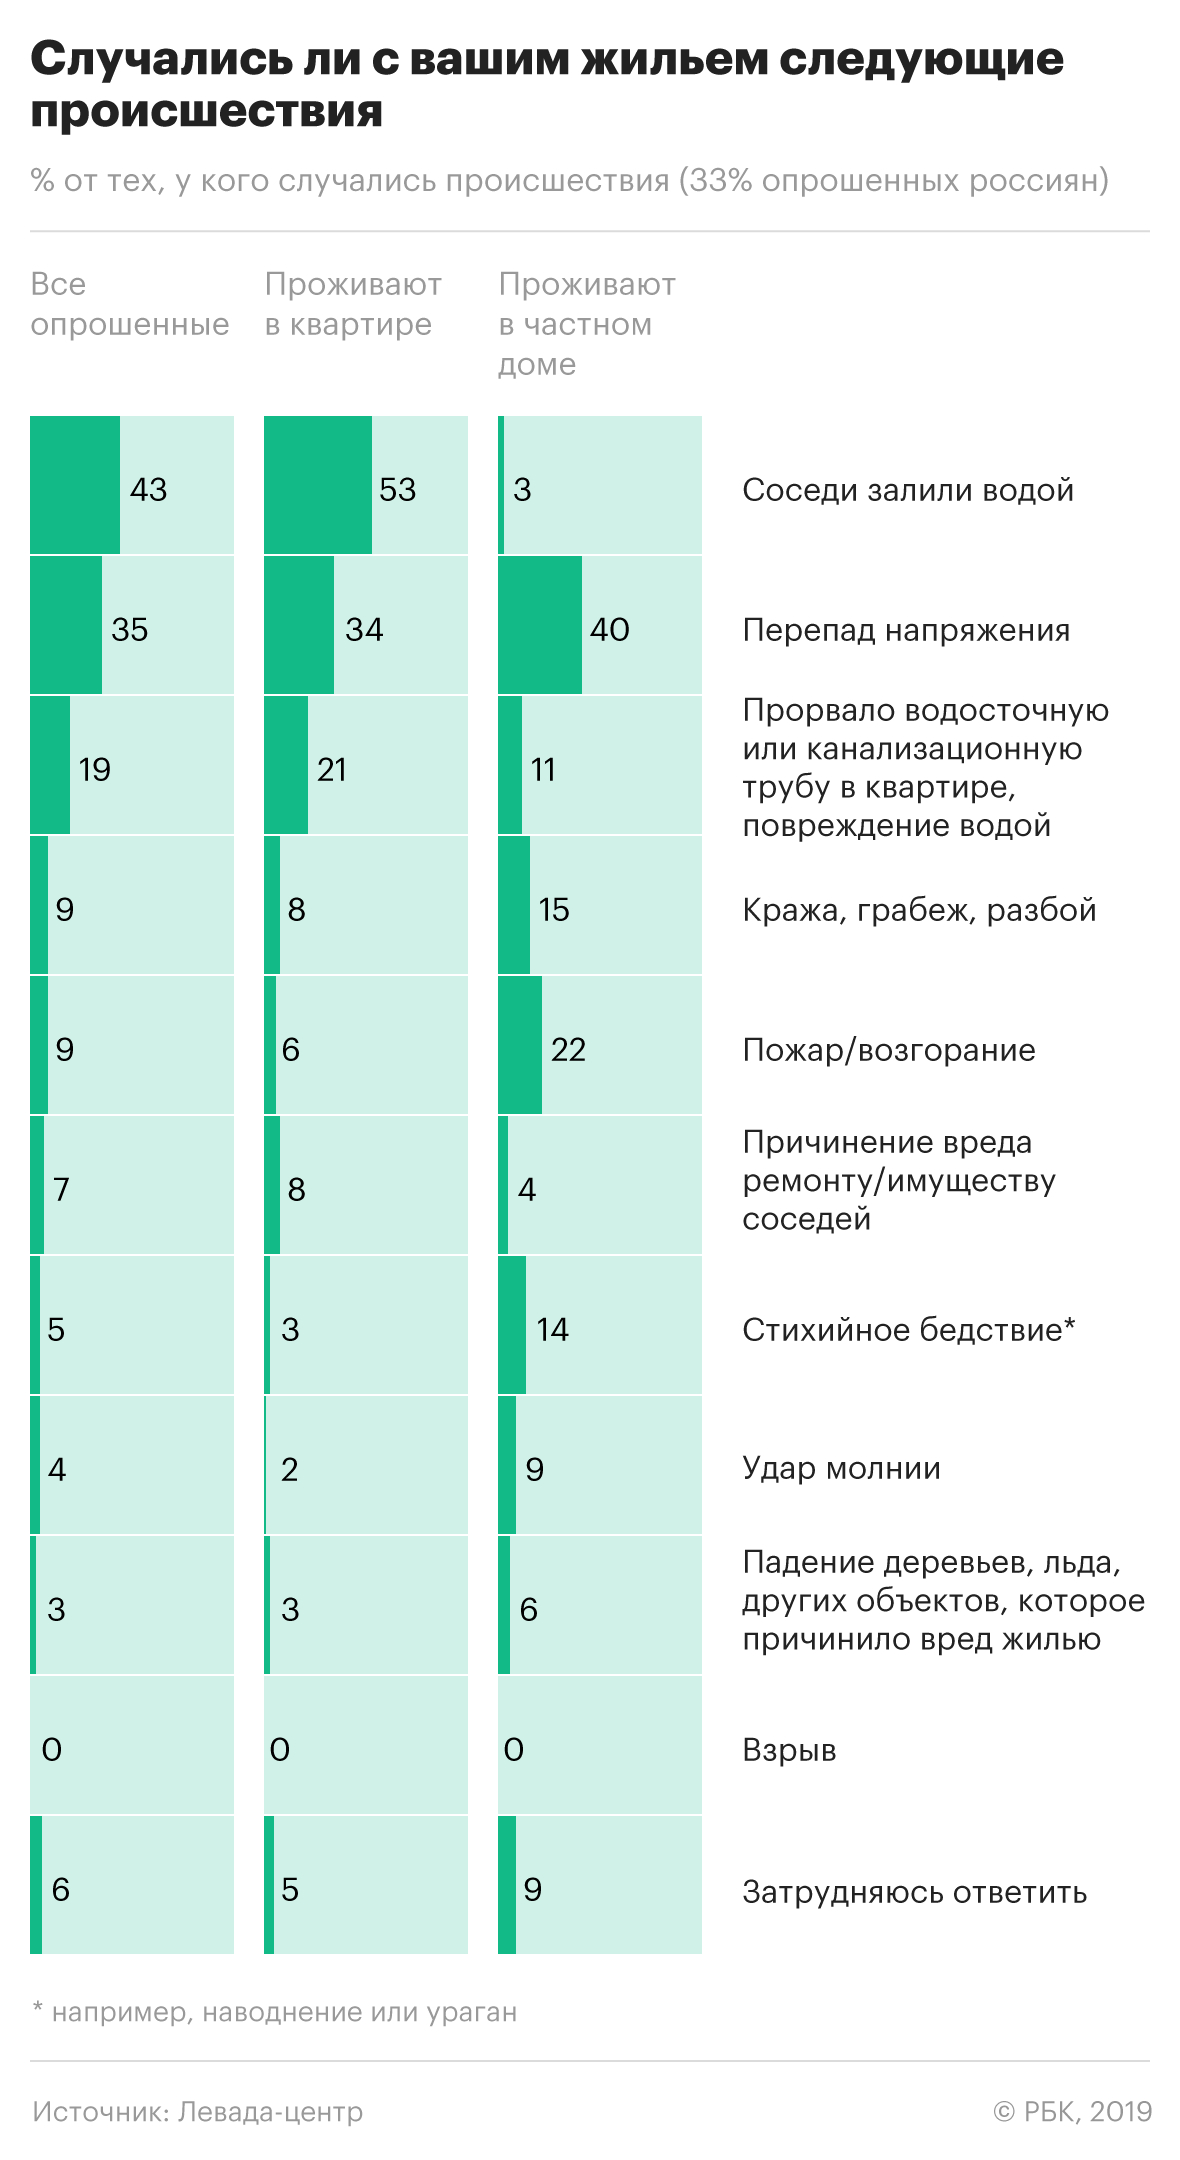 Россияне назвали самые распространенные беды со своим жильем